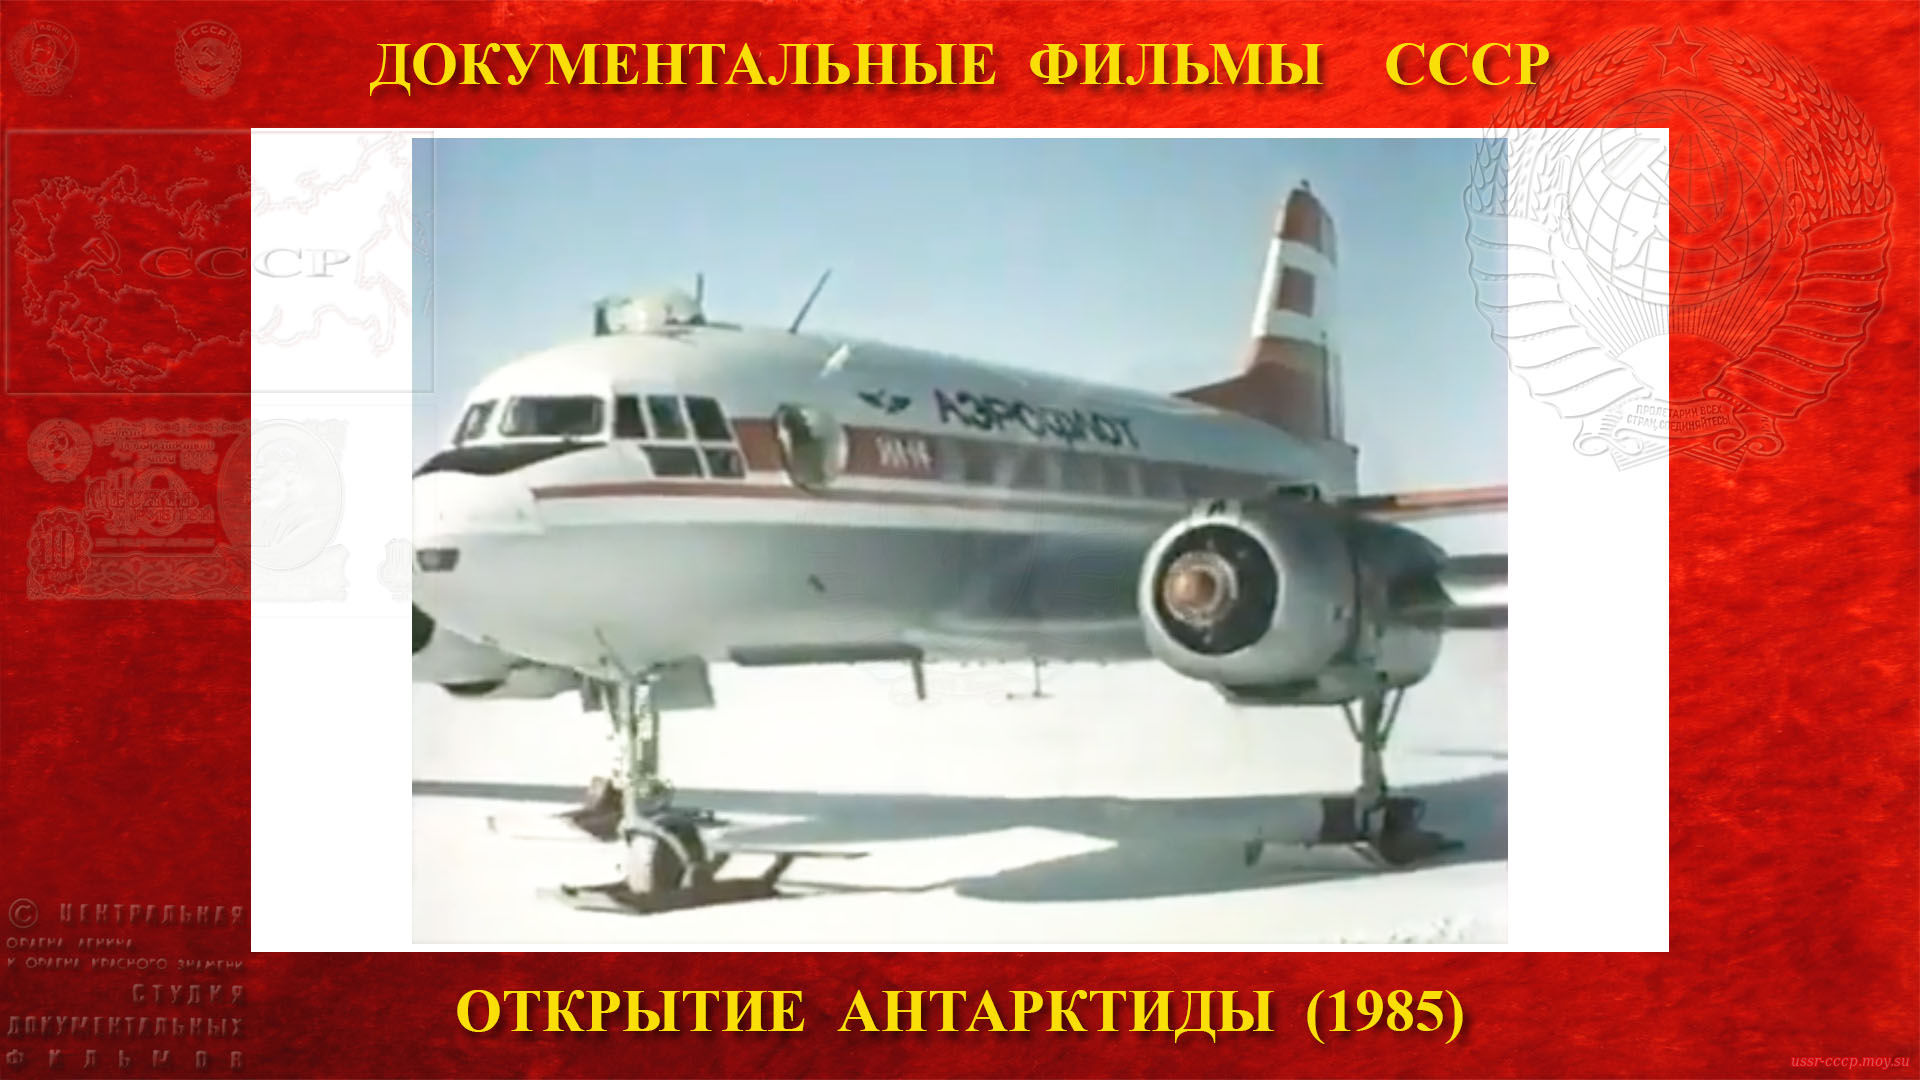 Открытие Антарктиды — Самолёт Ил-14 борт 0418? Аэровокзал, зал ожиданий, когда выходишь из самолёта на Востоке, то оказываешься как на вершине Эльбруса. 